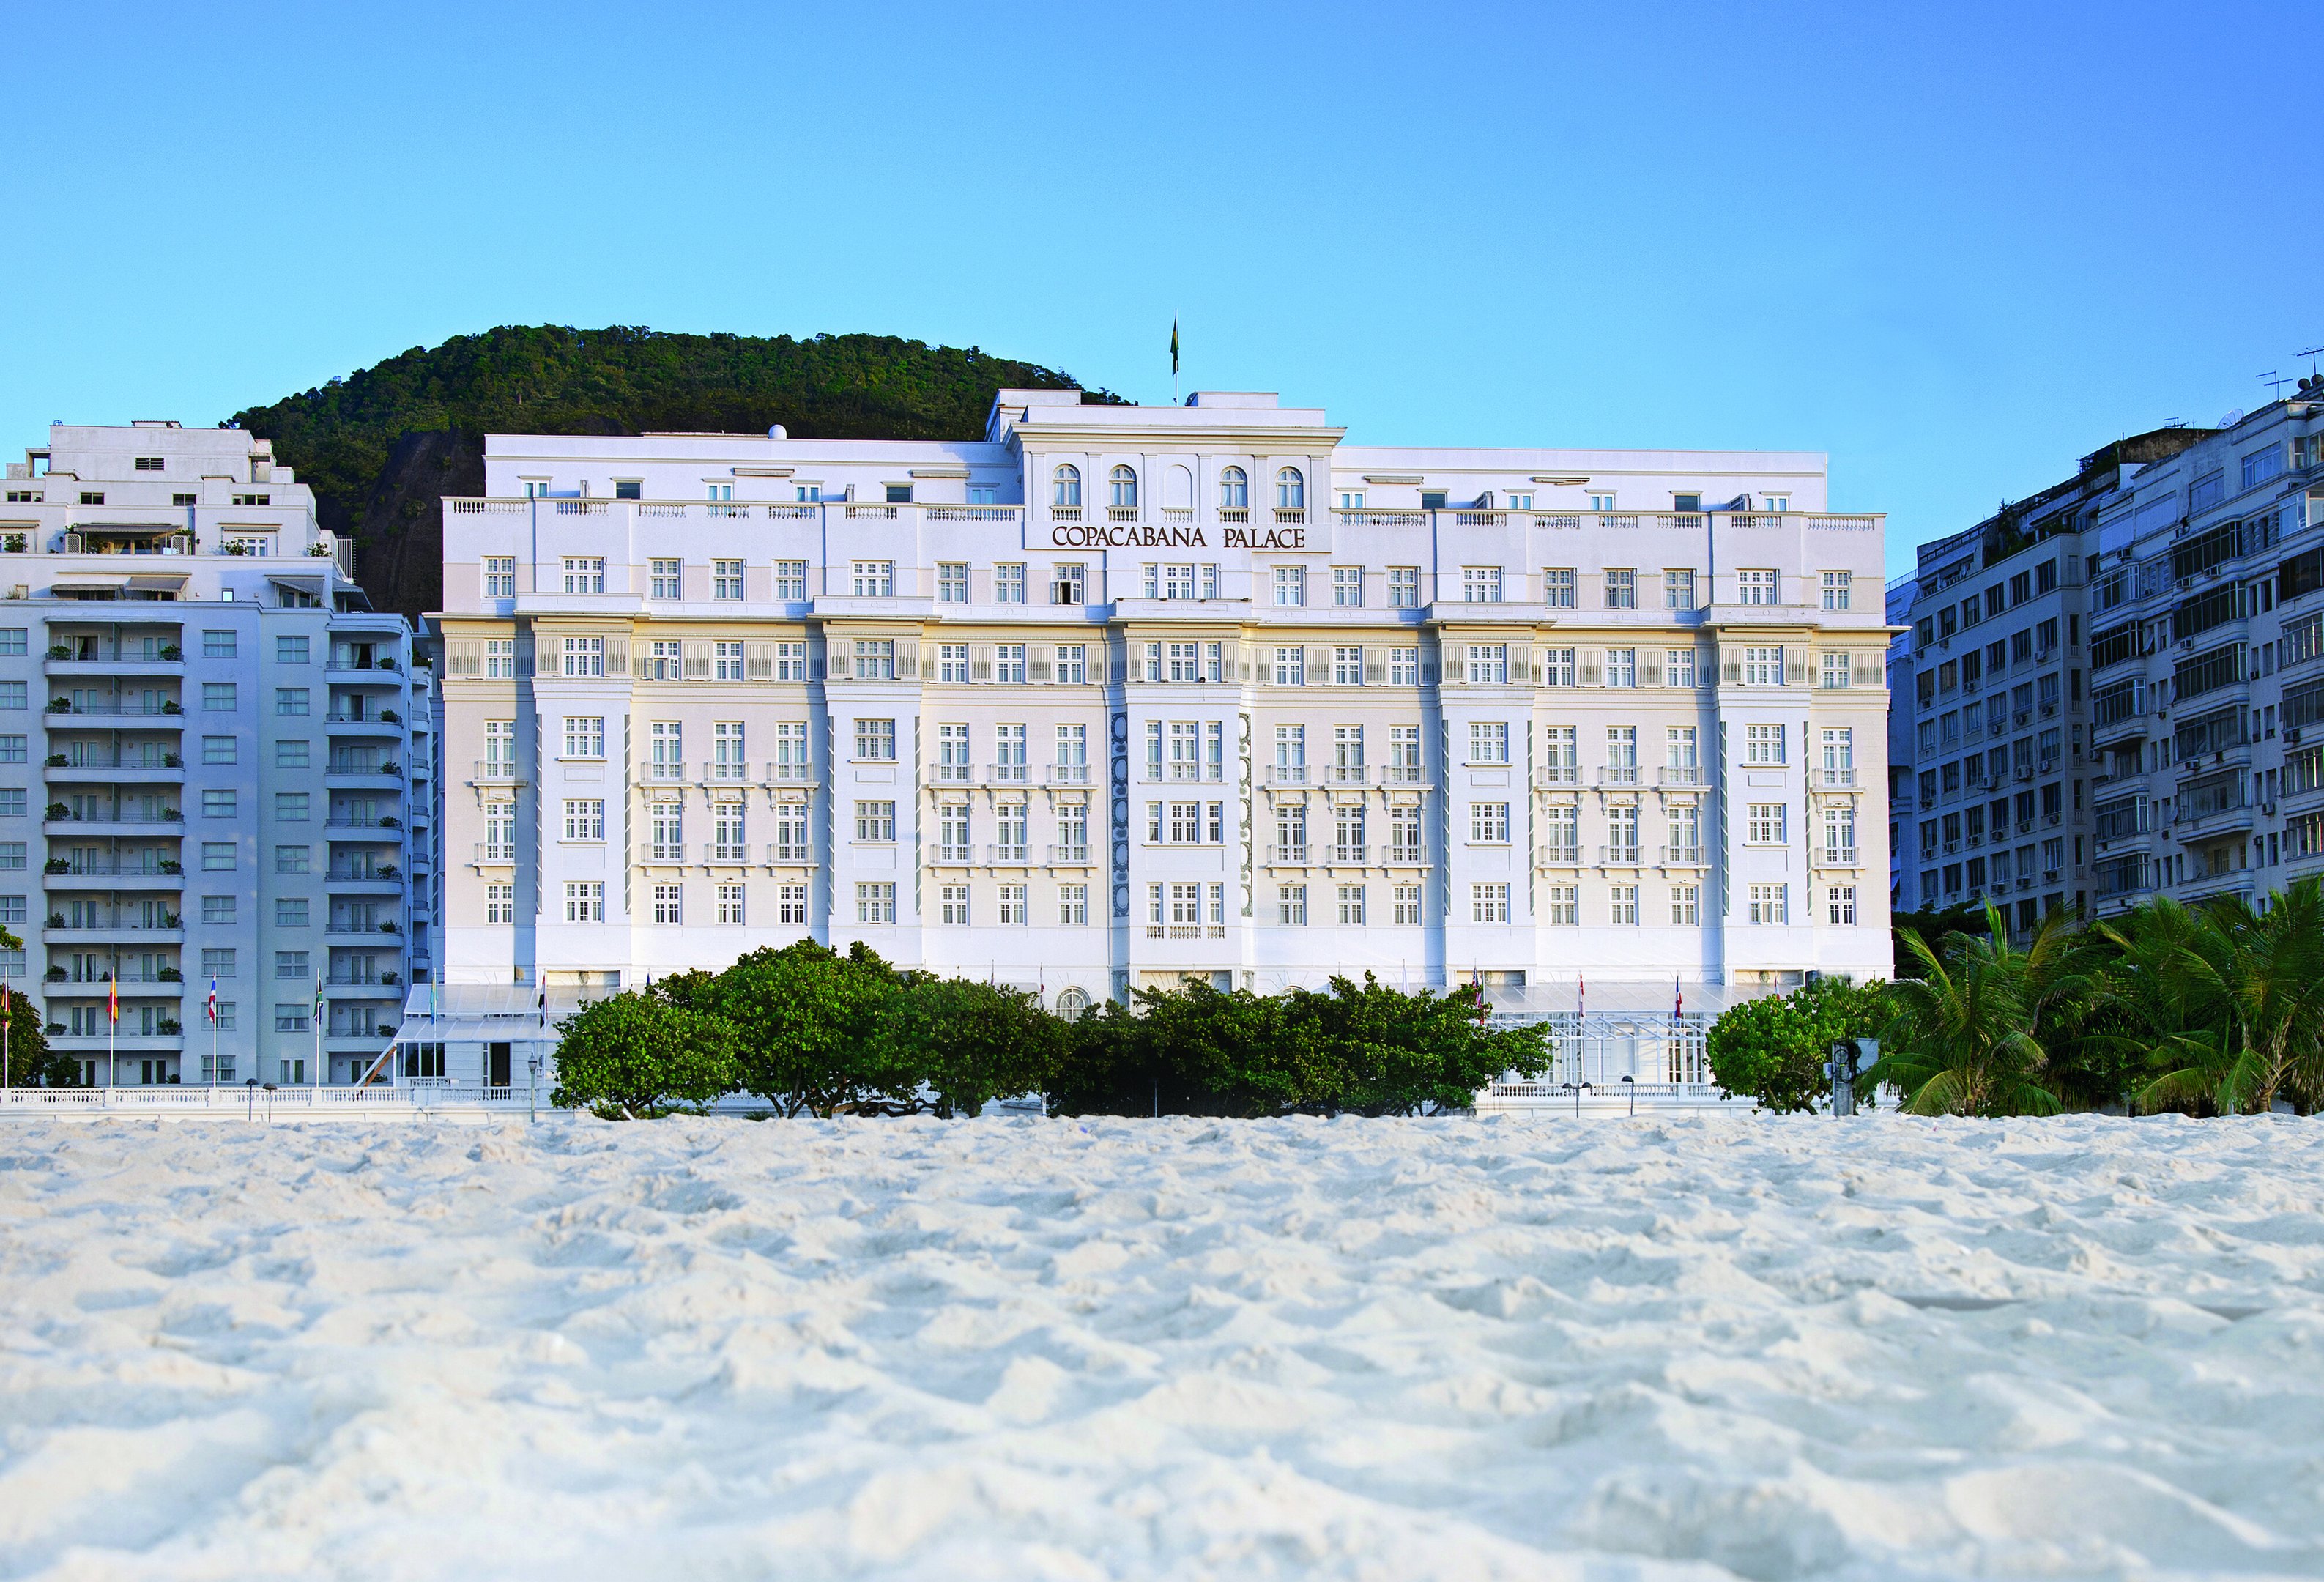 Copacabana Palace: o centenário do hotel mais famoso do Brasil